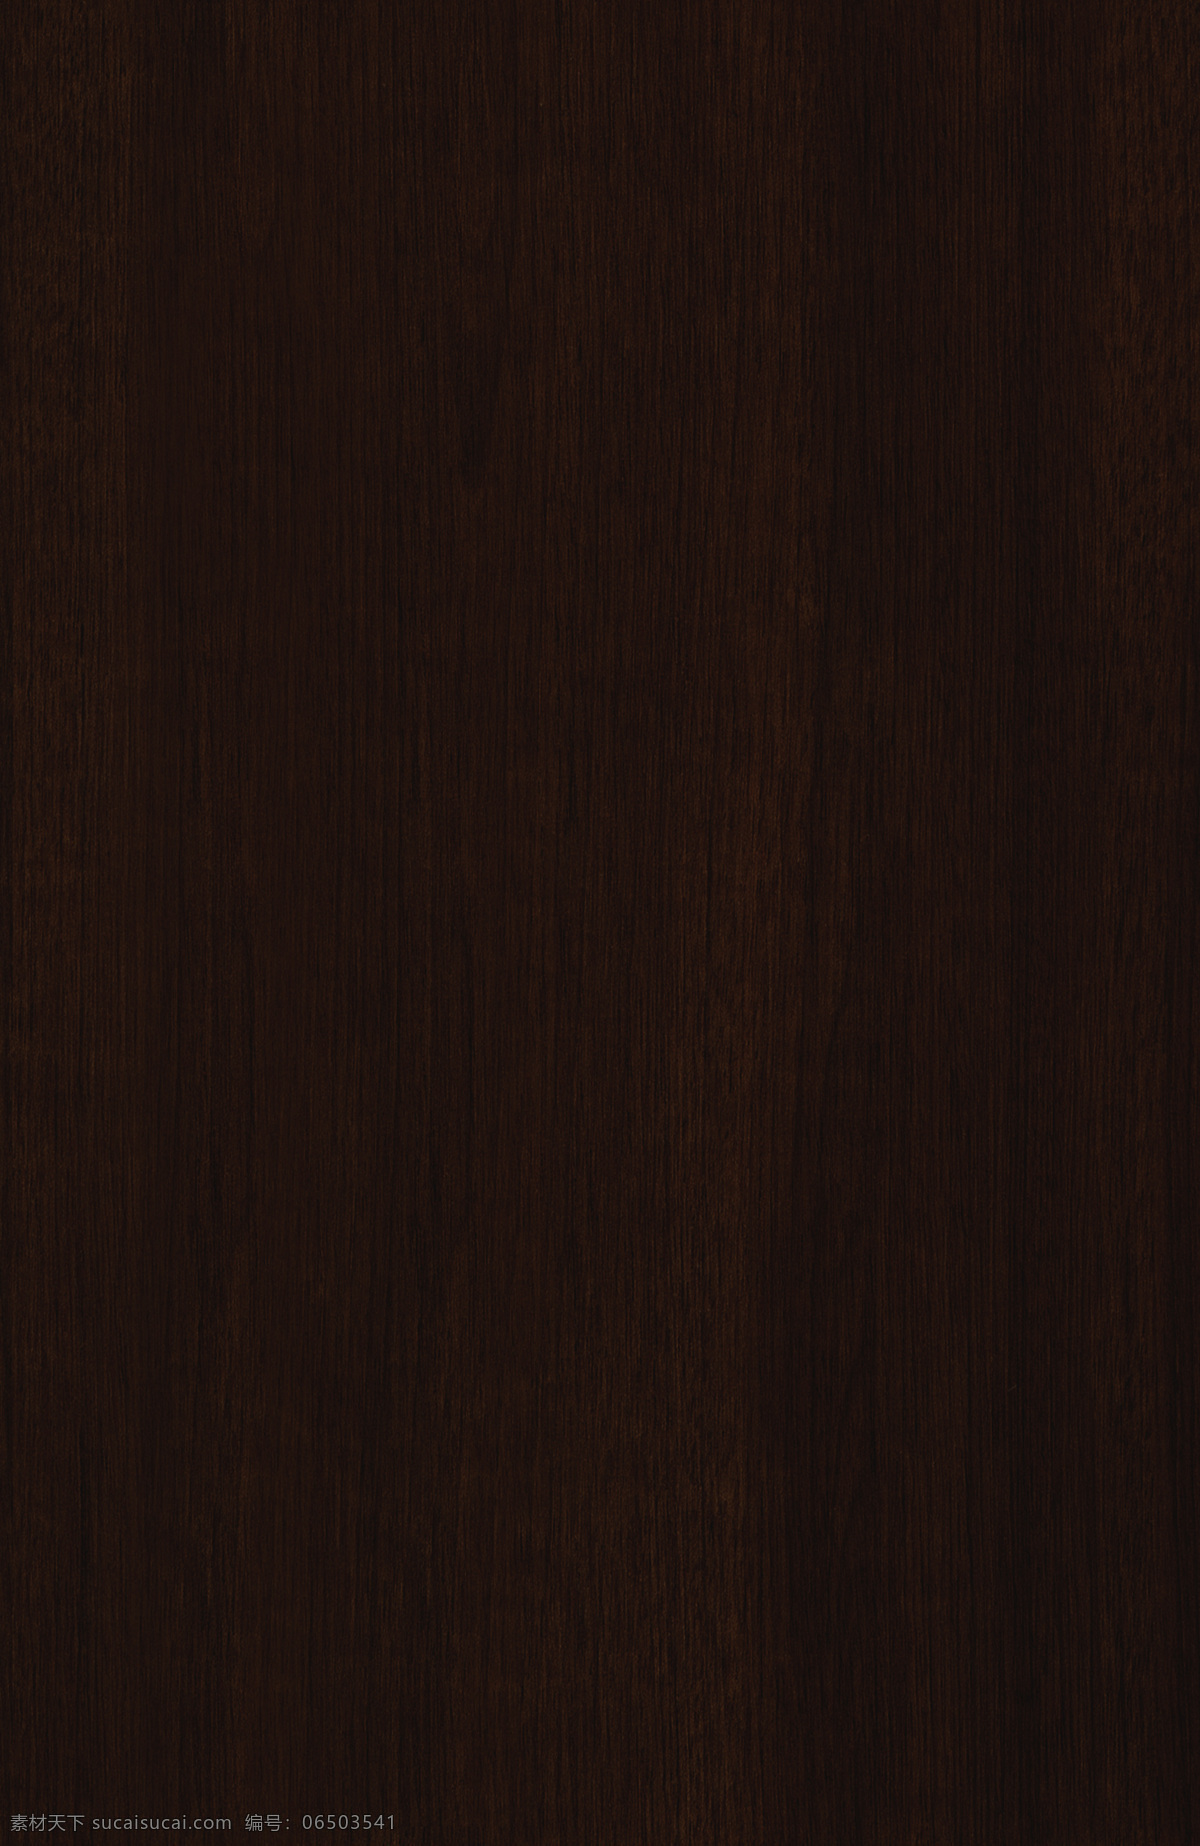 3d 效果 棕色 实木门 效果图 3d渲染 3d模型 实木门模型 棕色木门 旧木效果图